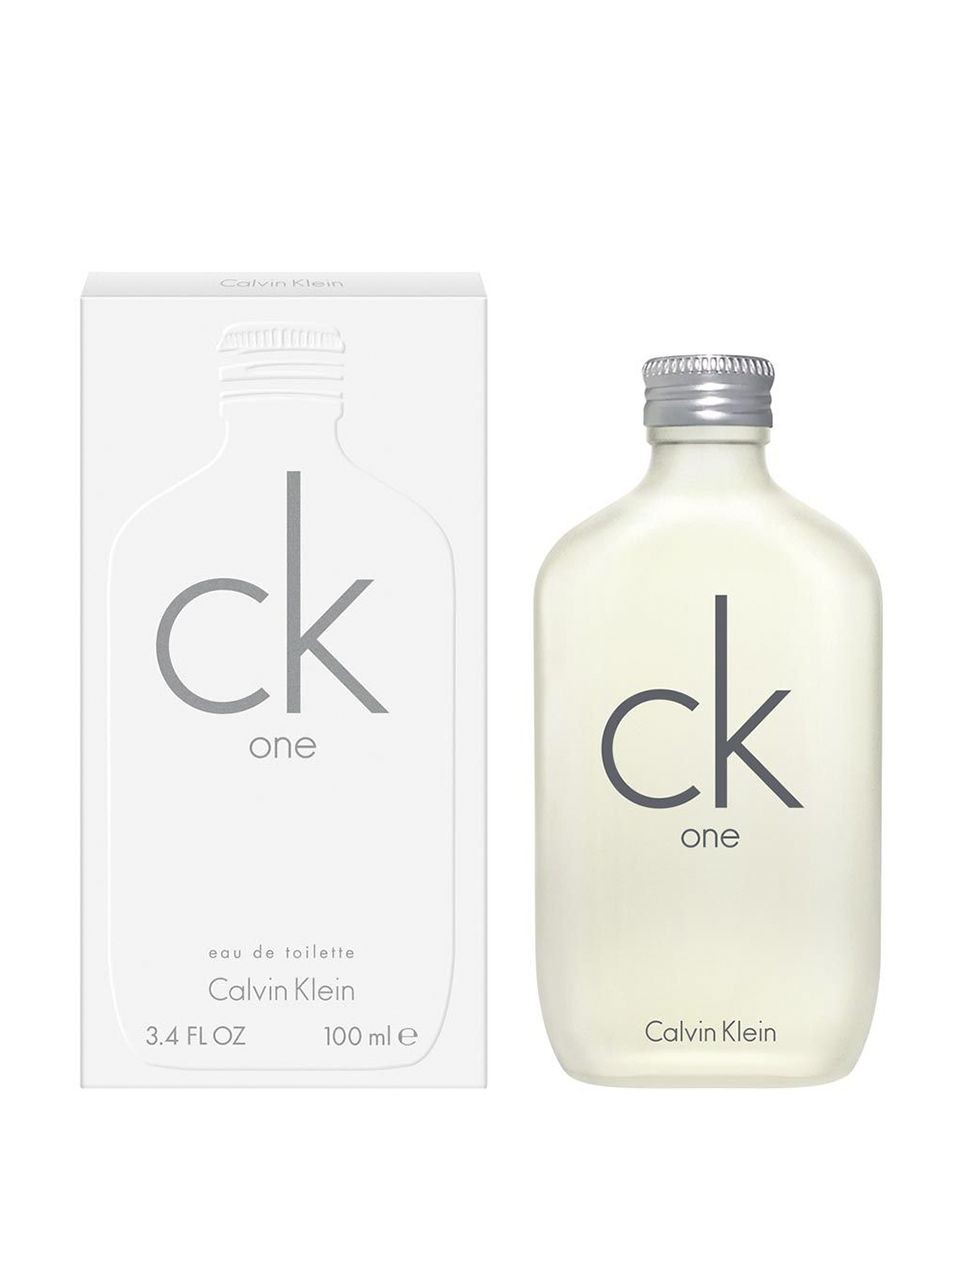 CK One Eau de Toilette 100 ml